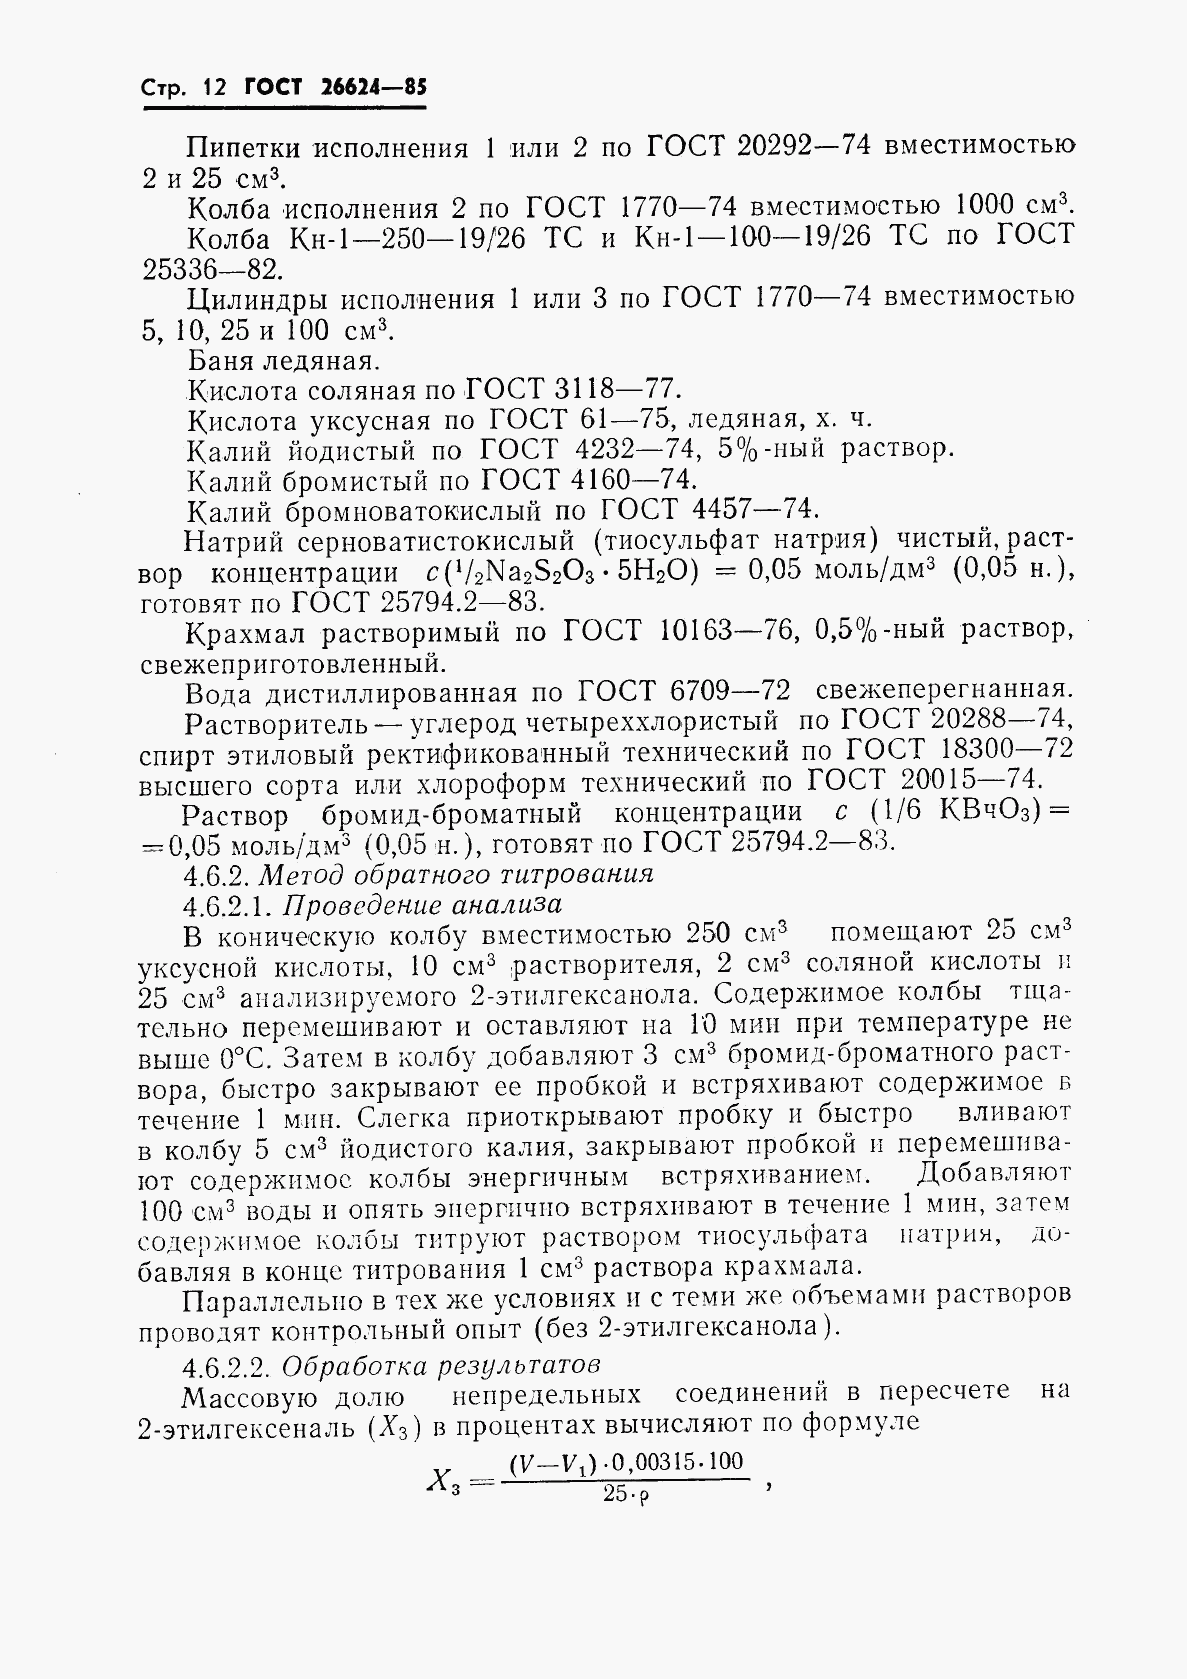 ГОСТ 26624-85, страница 14